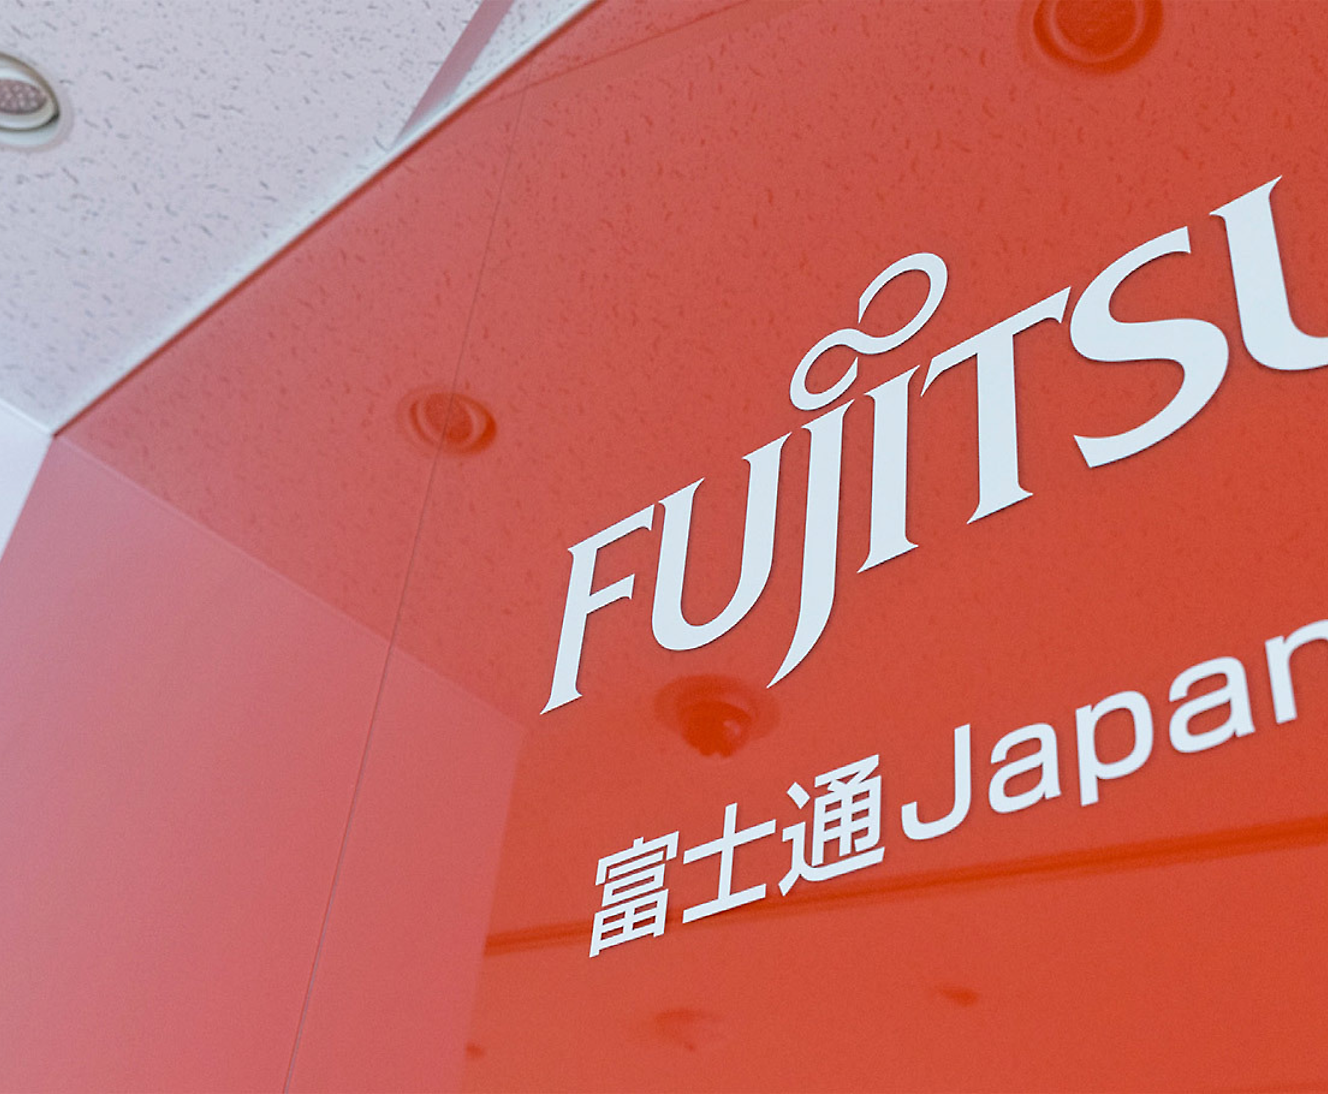 Gedeeltelijke close-up van een Fujitsu-logo en Japanse tekst op een rode achtergrond vanuit een hoek 